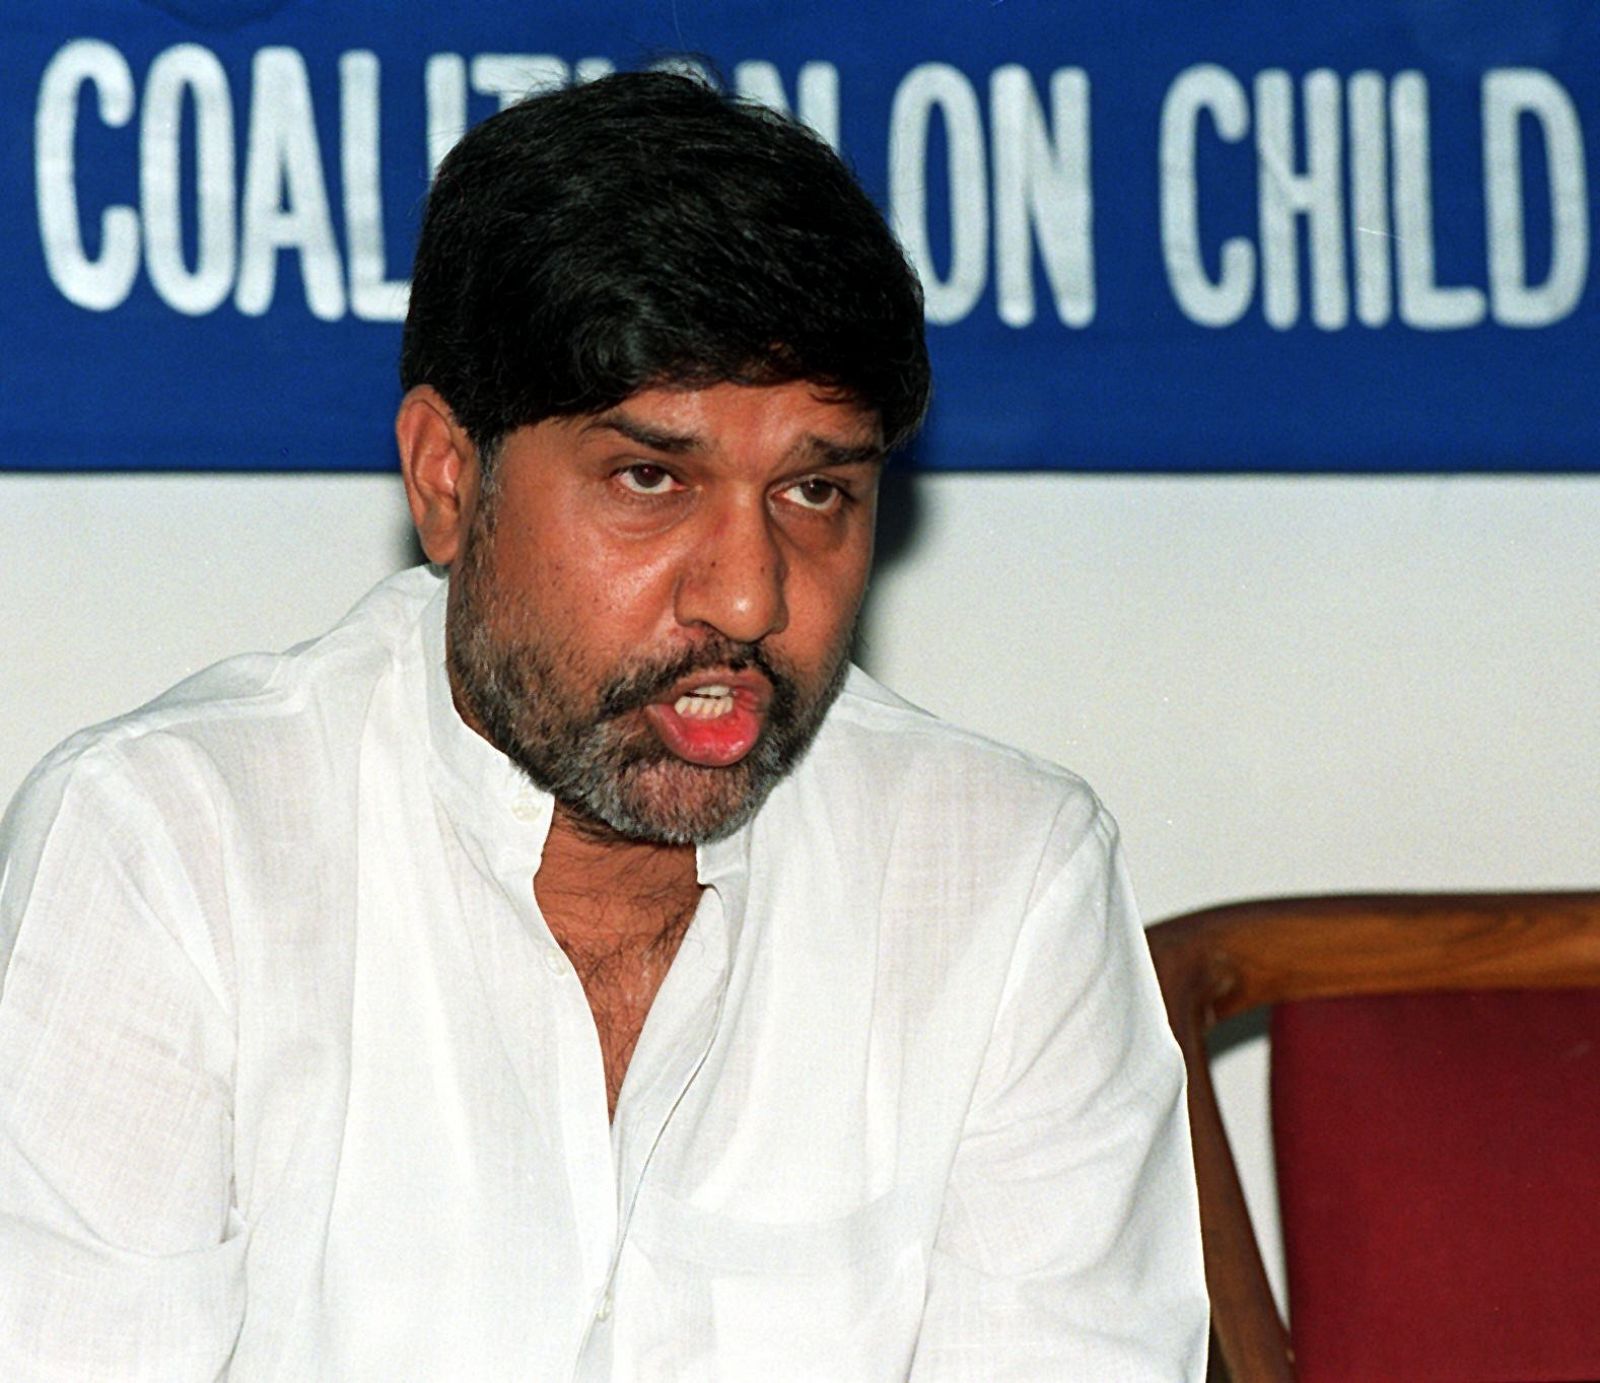 Foto de archivo de Kailash Satyarthi, activista indio contra el trabajo infantil